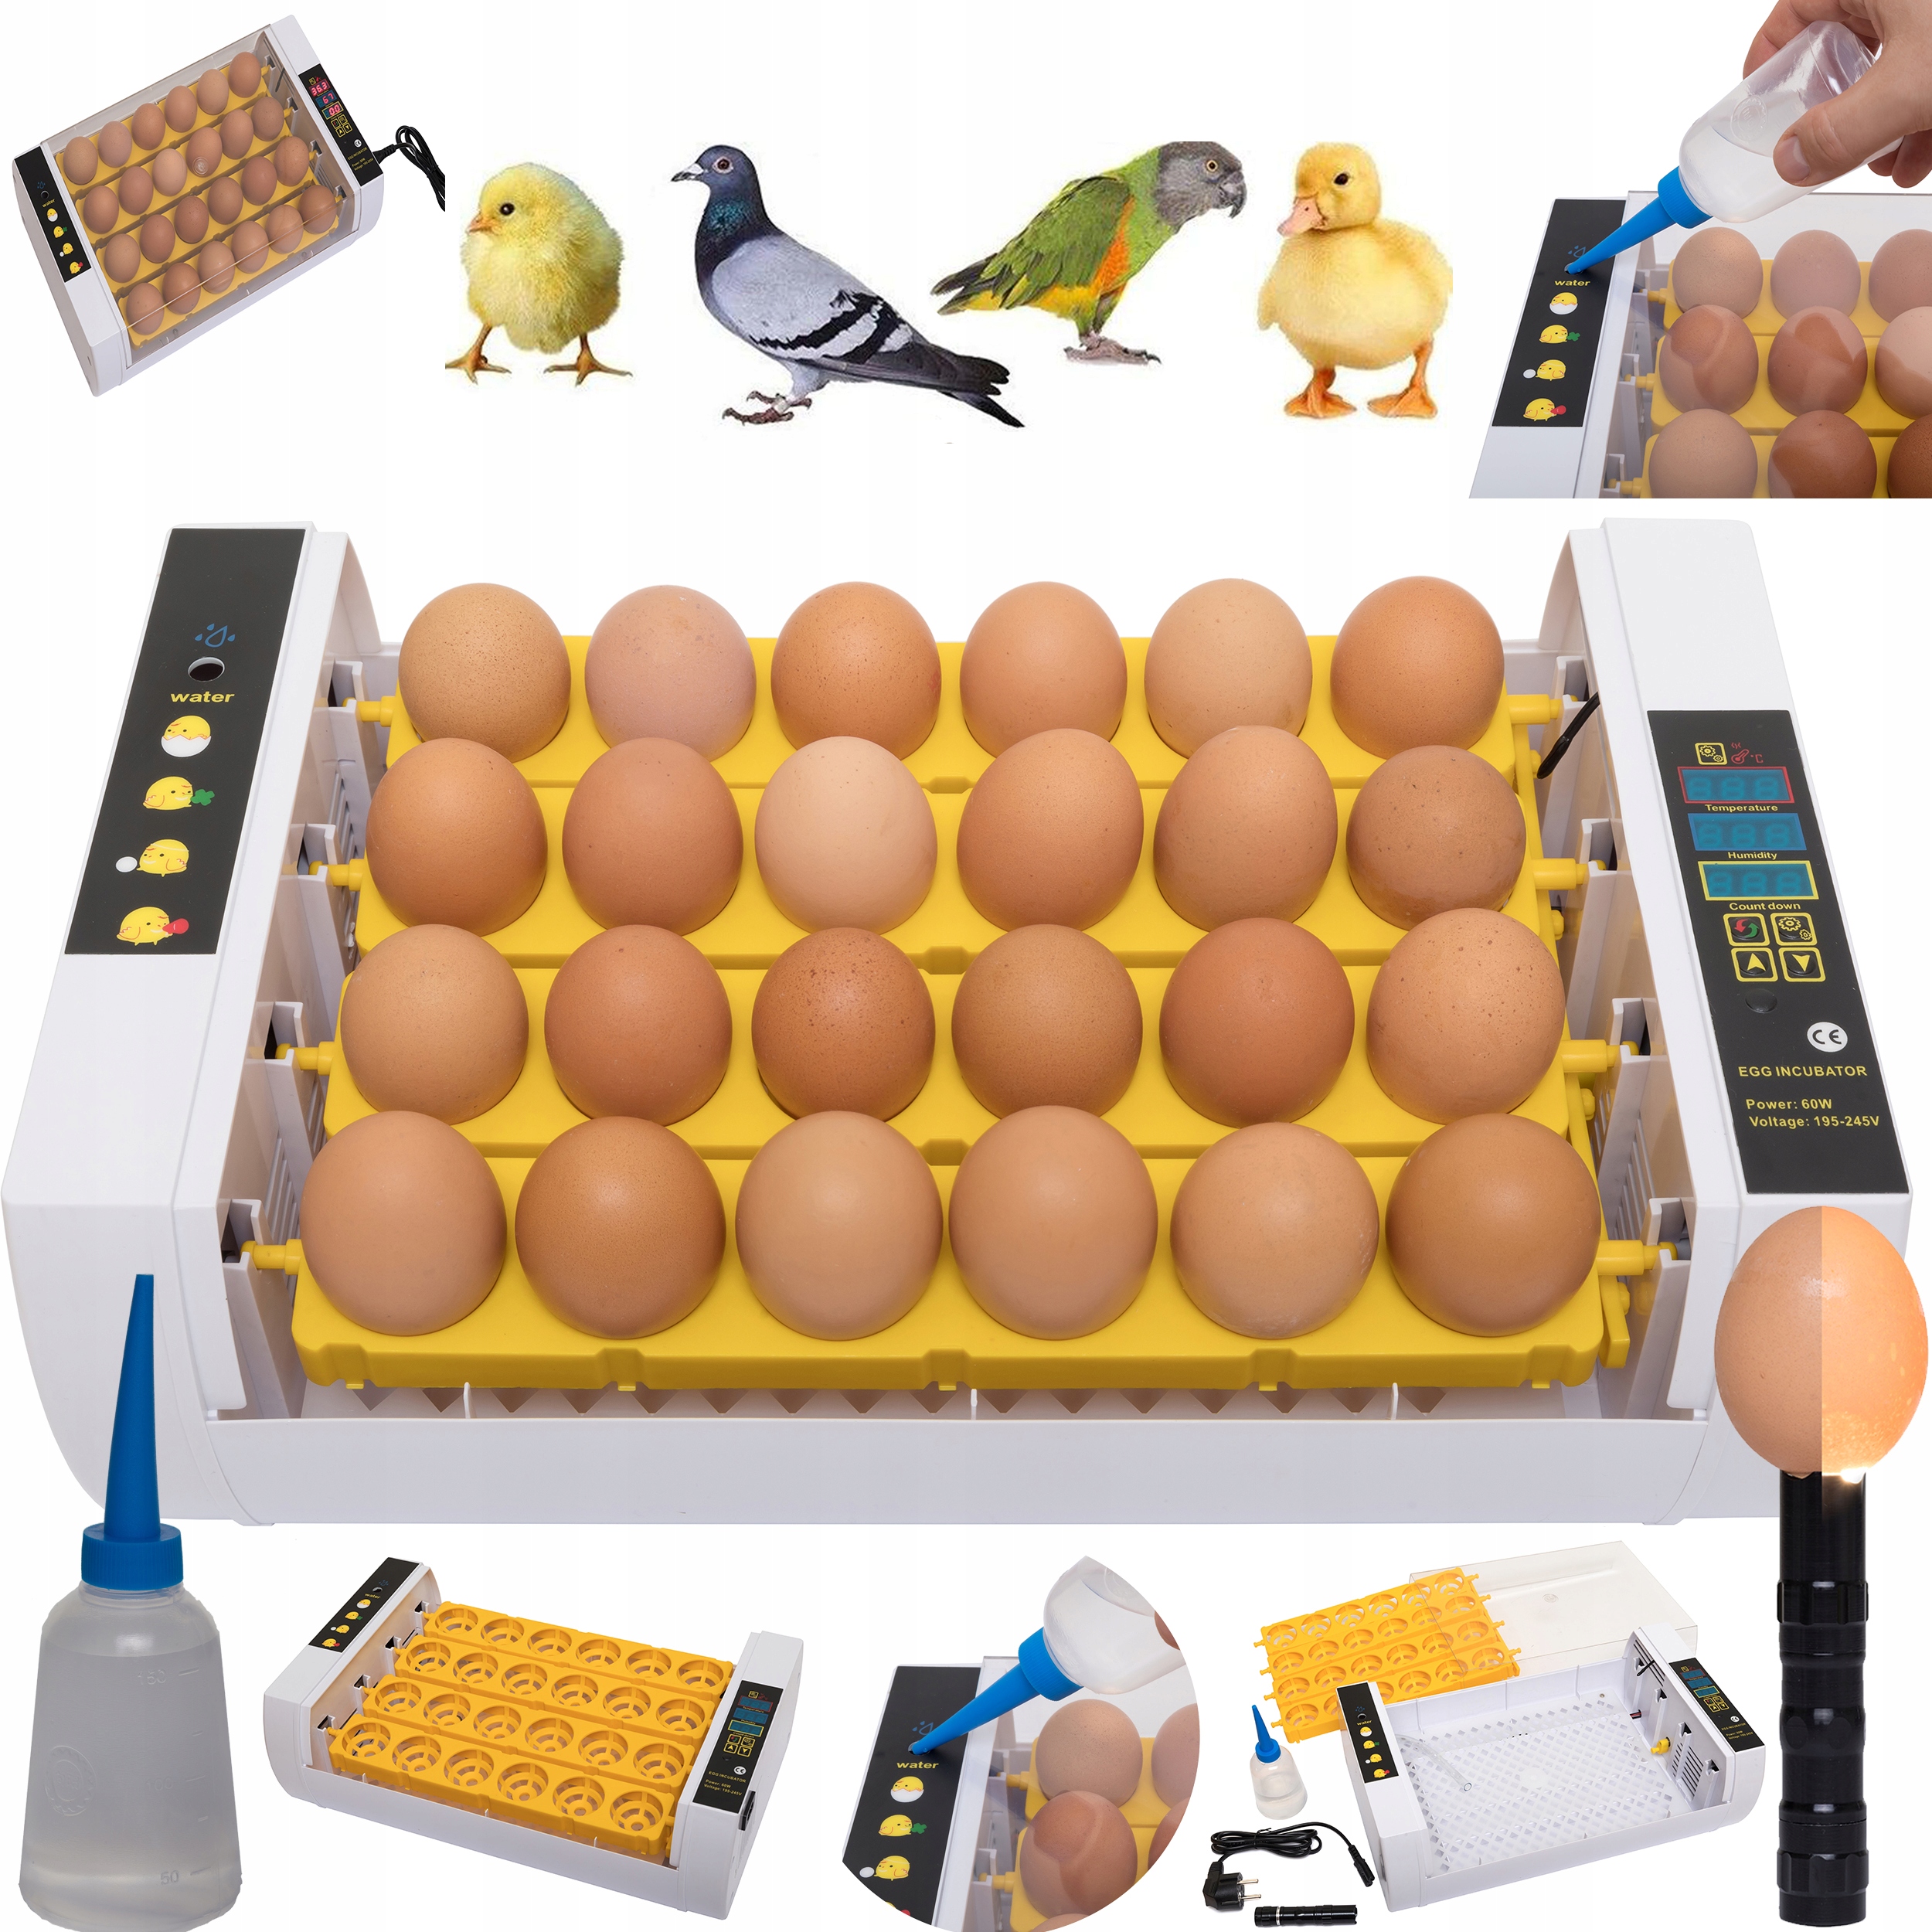  для инкубации яиц птицы до 35 яиц в   из Европы .